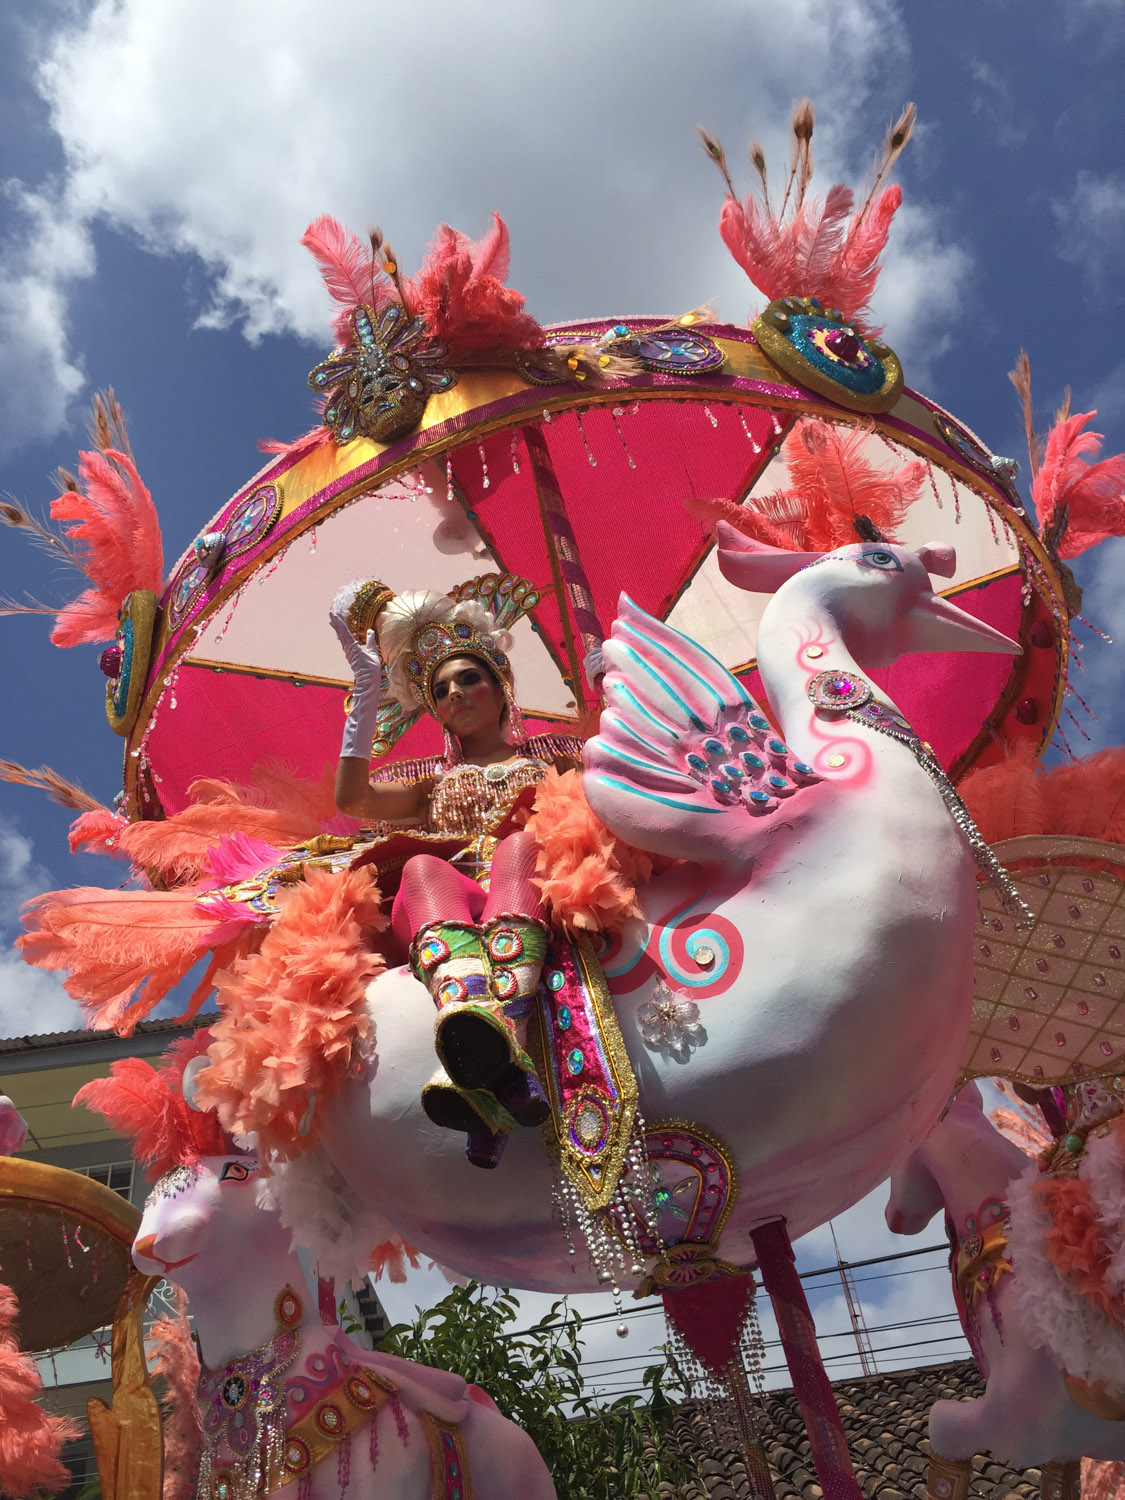 Carroza en los culecos, o fiesta diurna, de los Carnavales de Las Tablas, Panamá